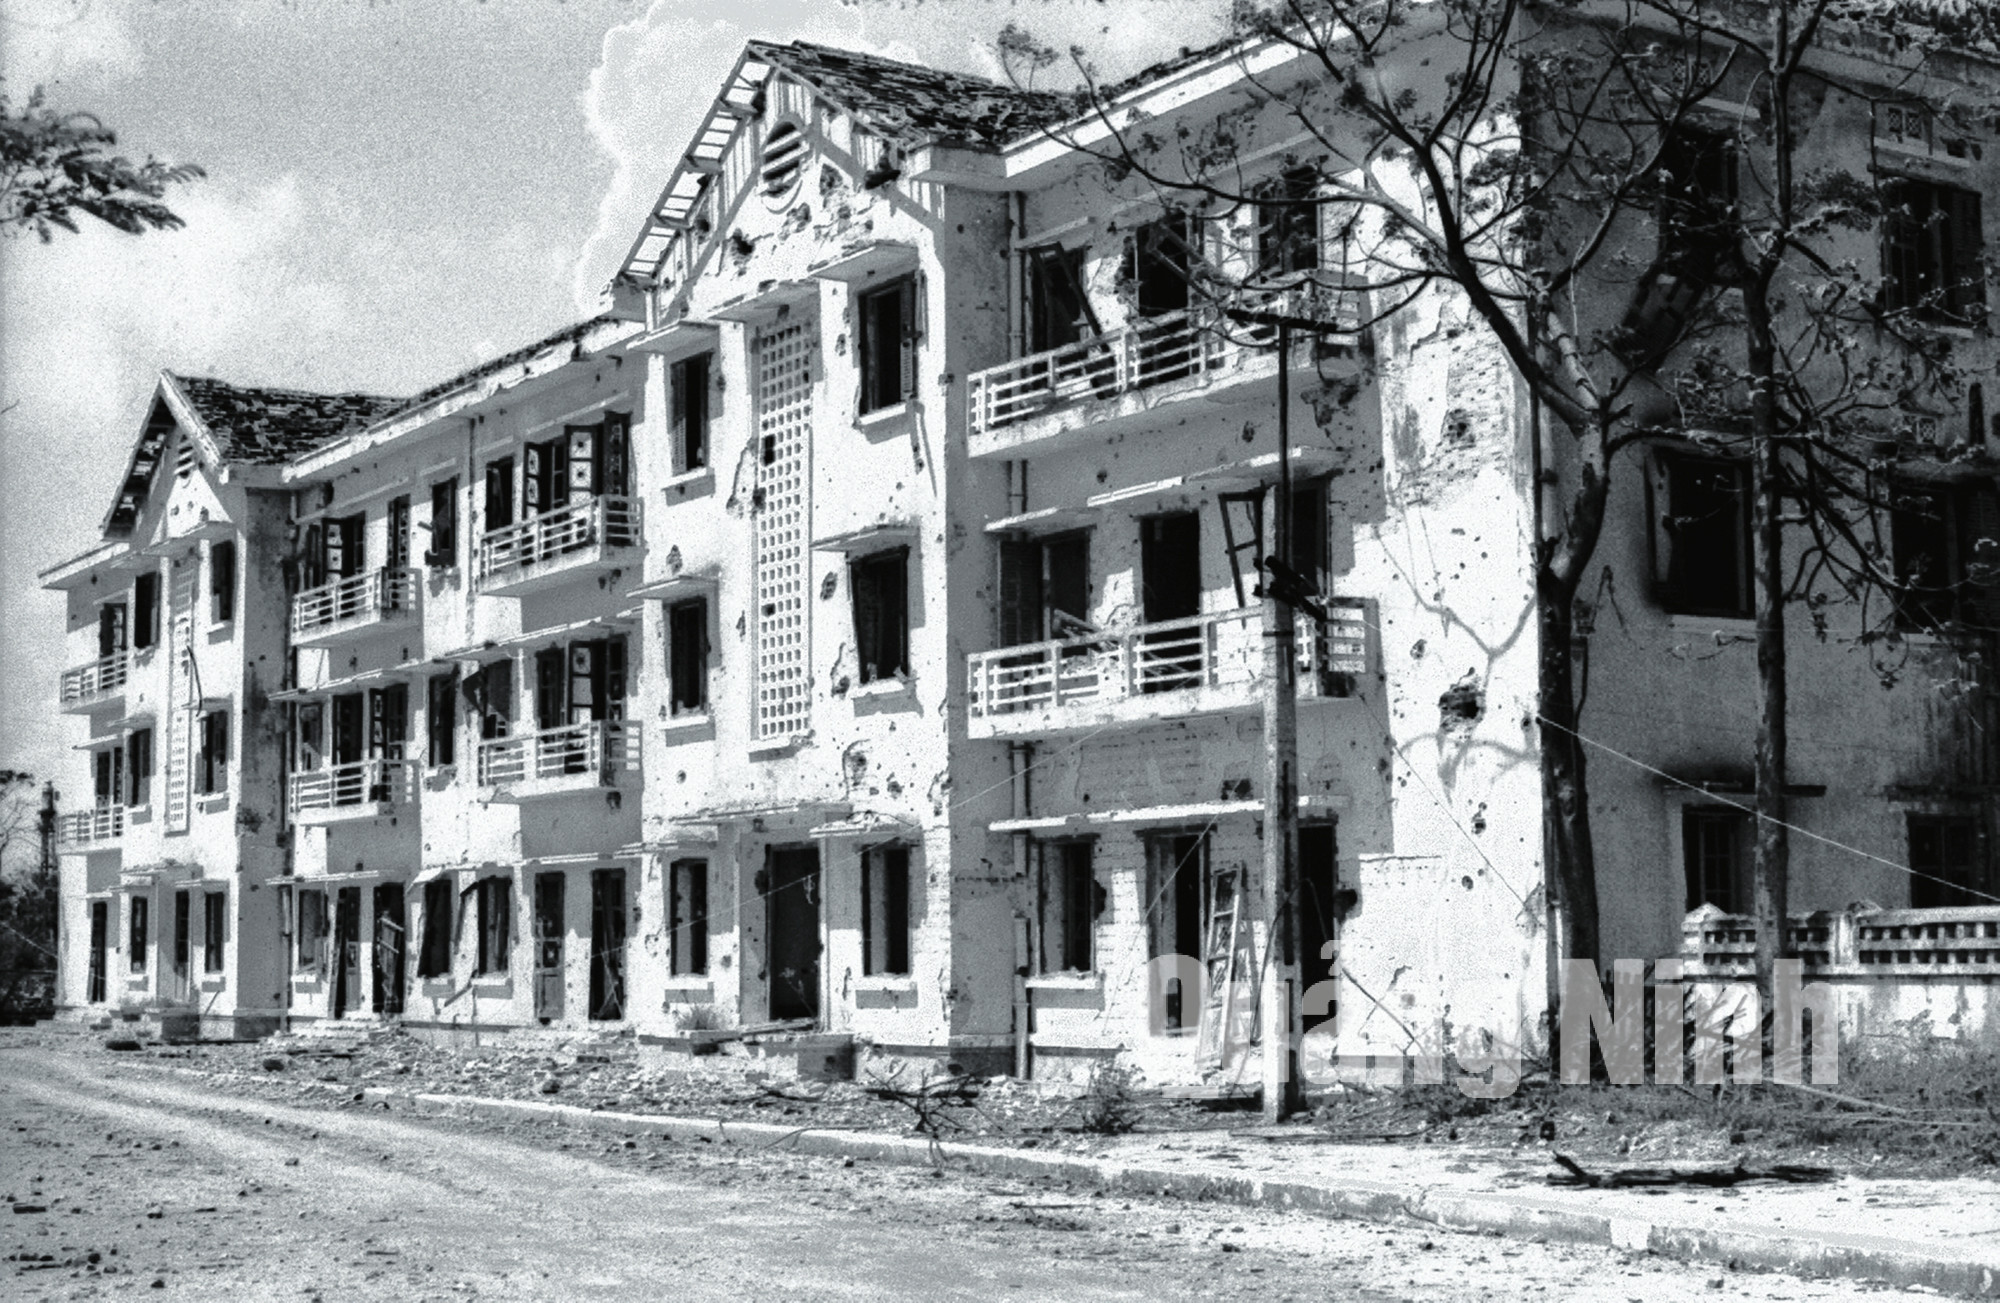 Khách sạn nội địa Hòn Gai bị máy bay Mỹ bắn phá năm 1972. Ảnh: Tư liệu